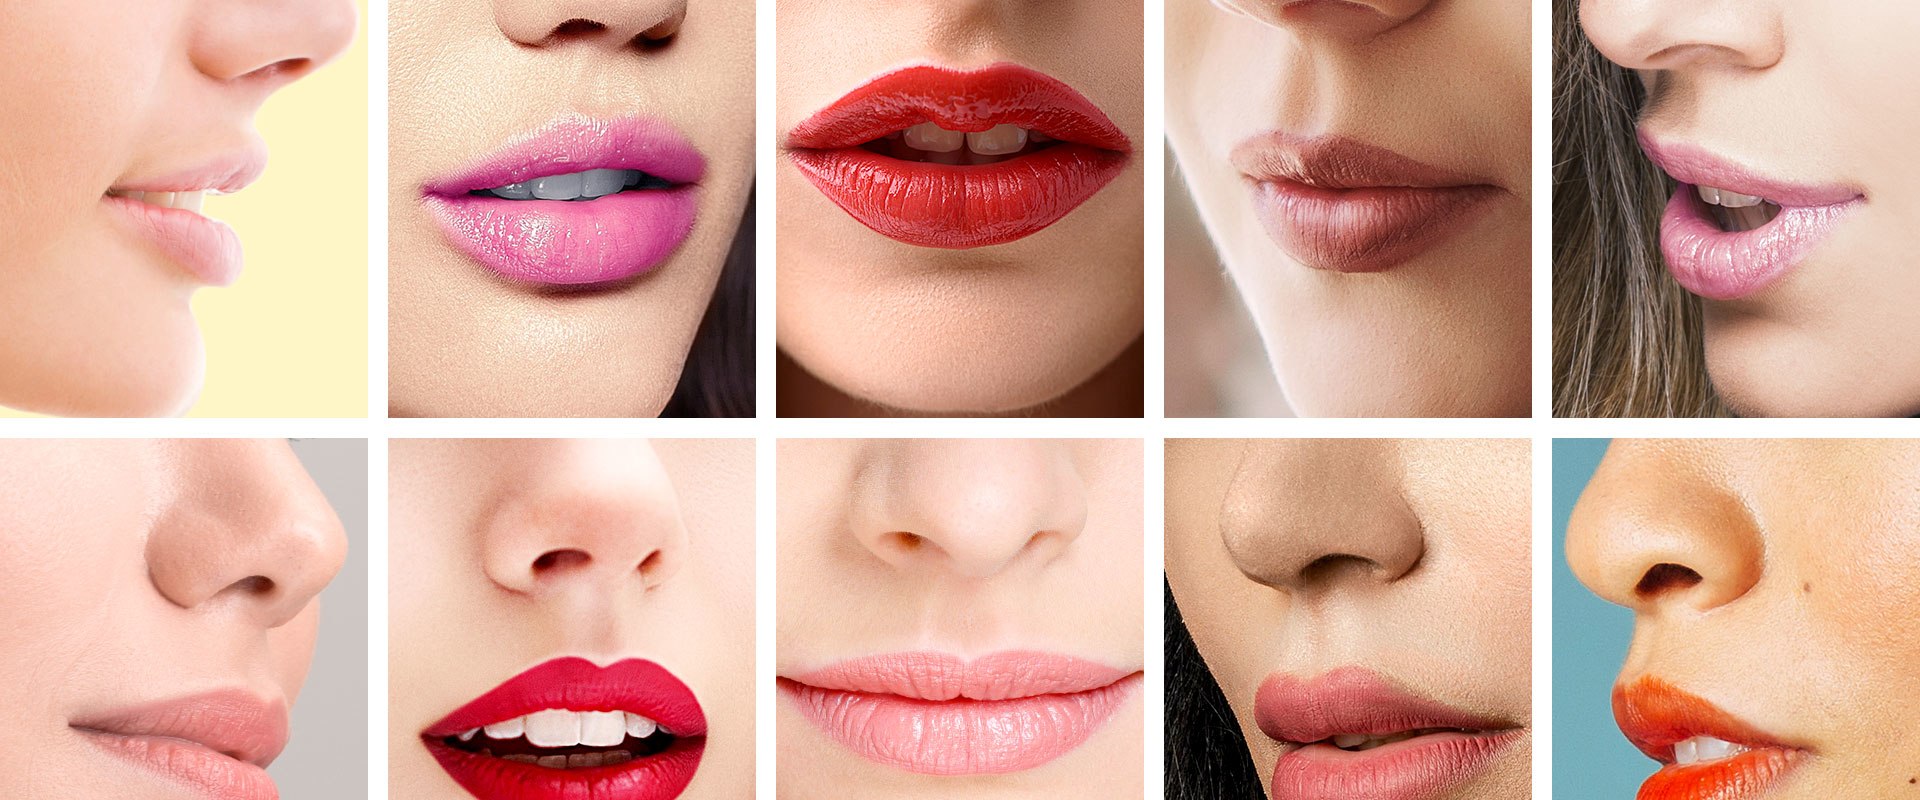 Qué marca es mejor para relleno de labios?